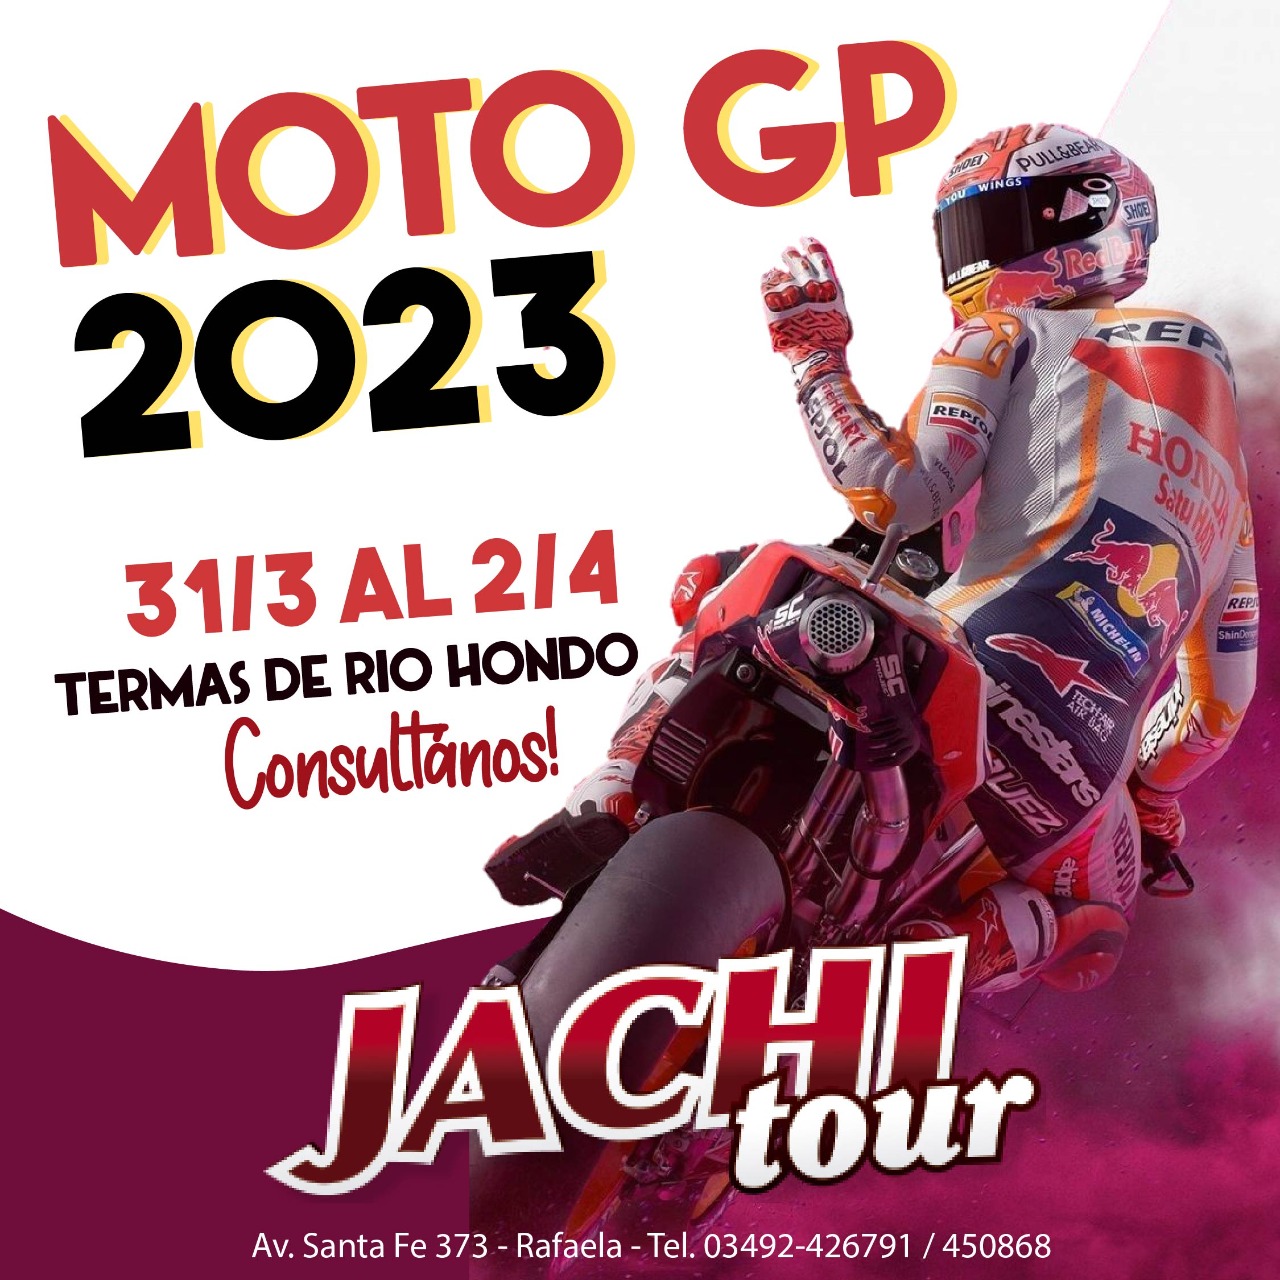 MOTO GP 2023